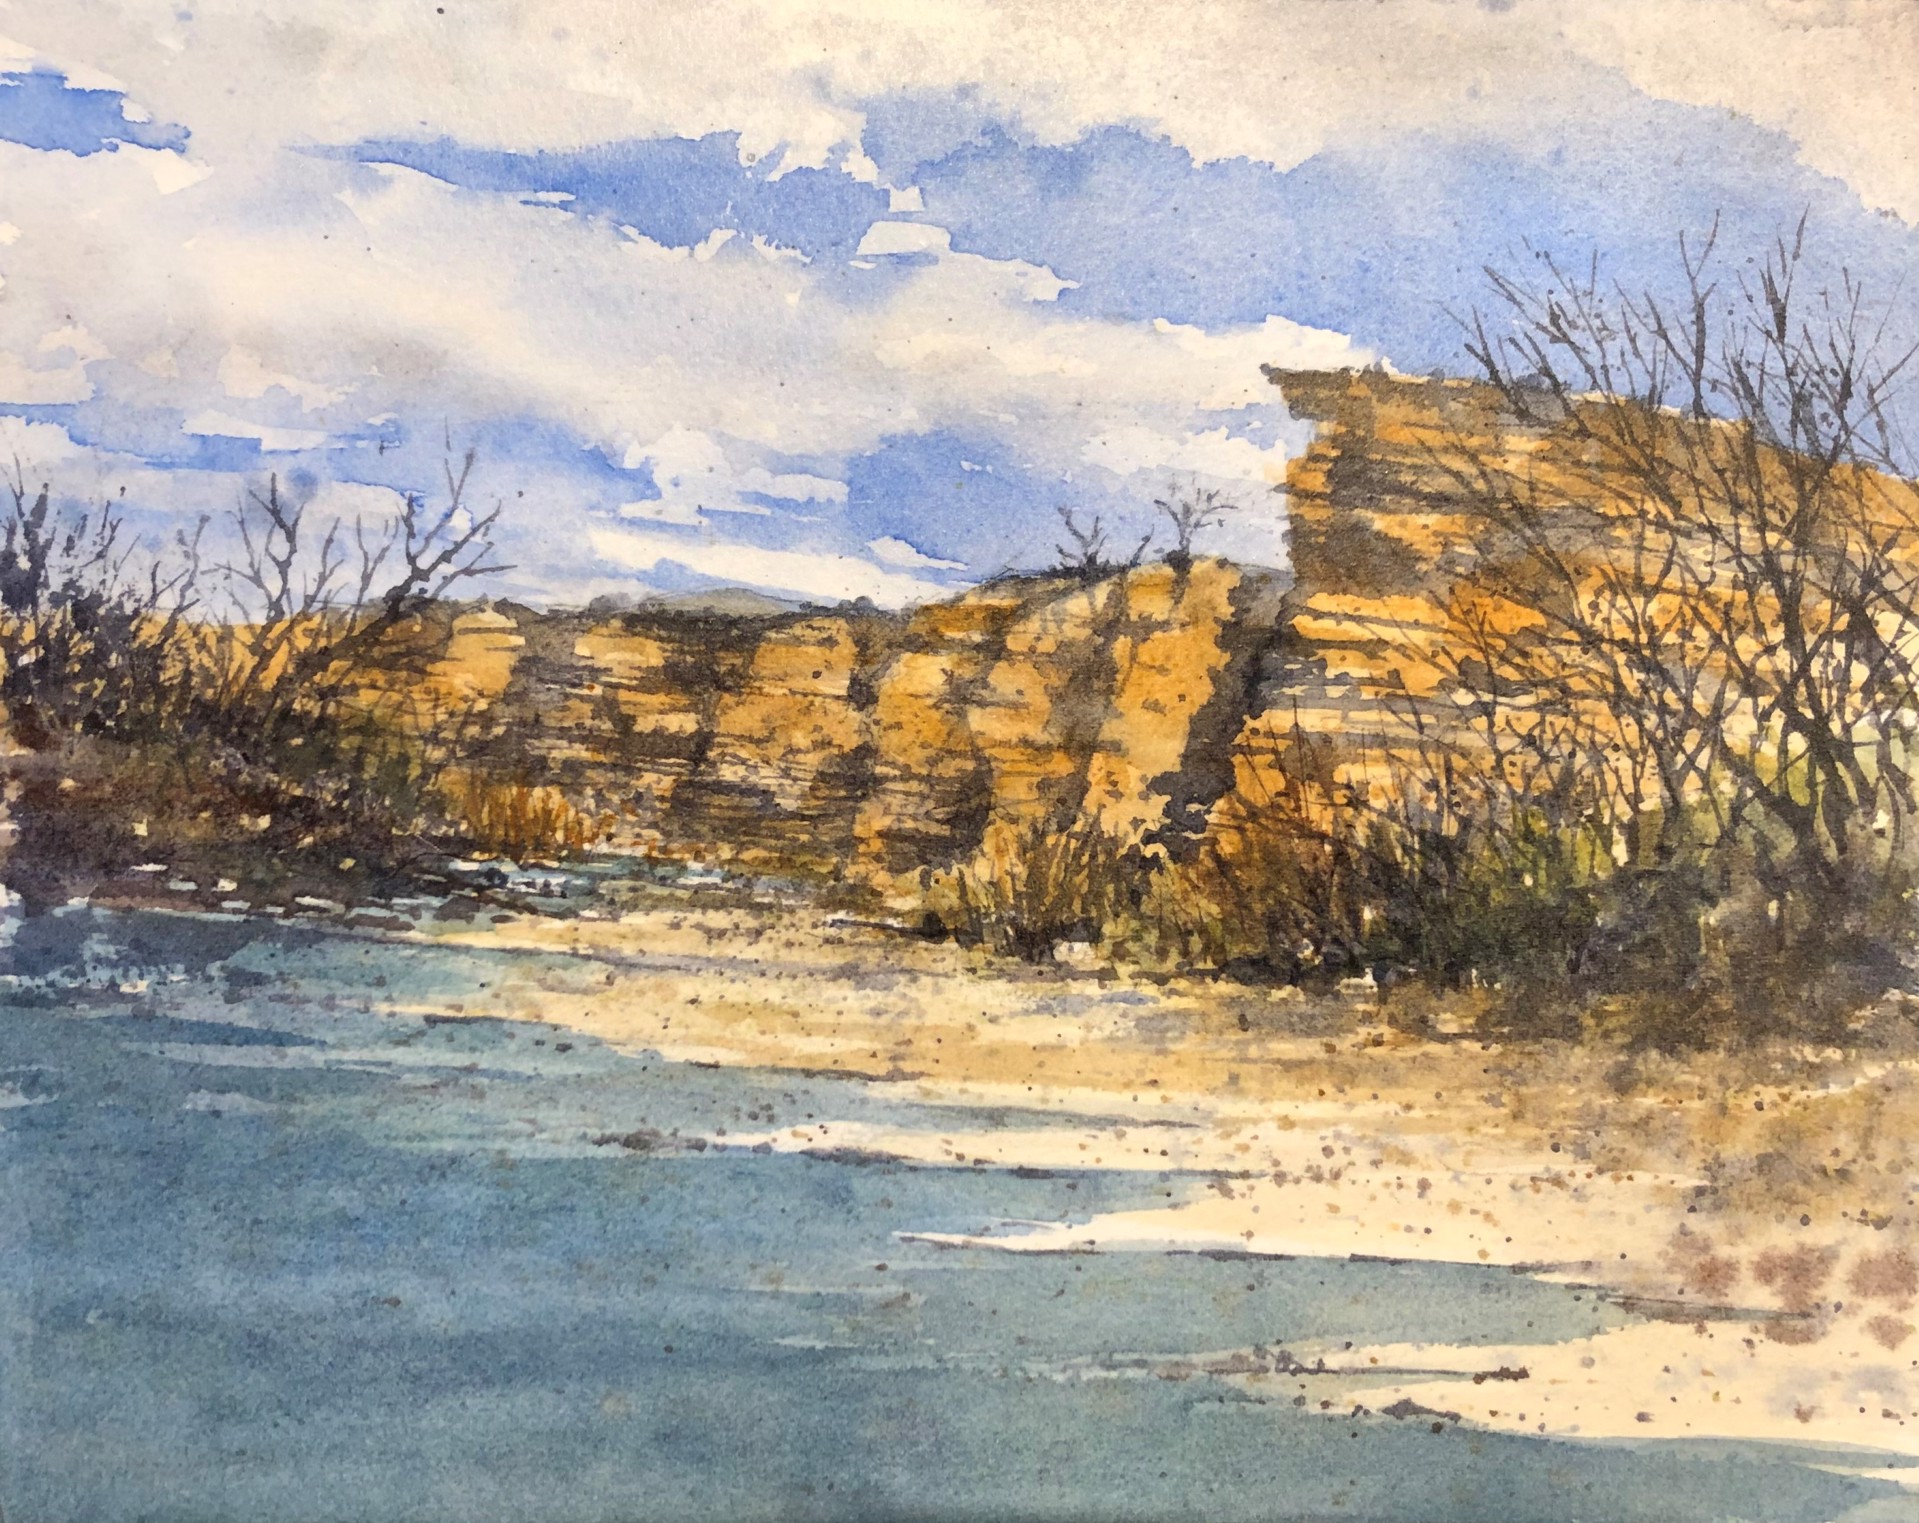 Terlingua Creek by Jeff Williams